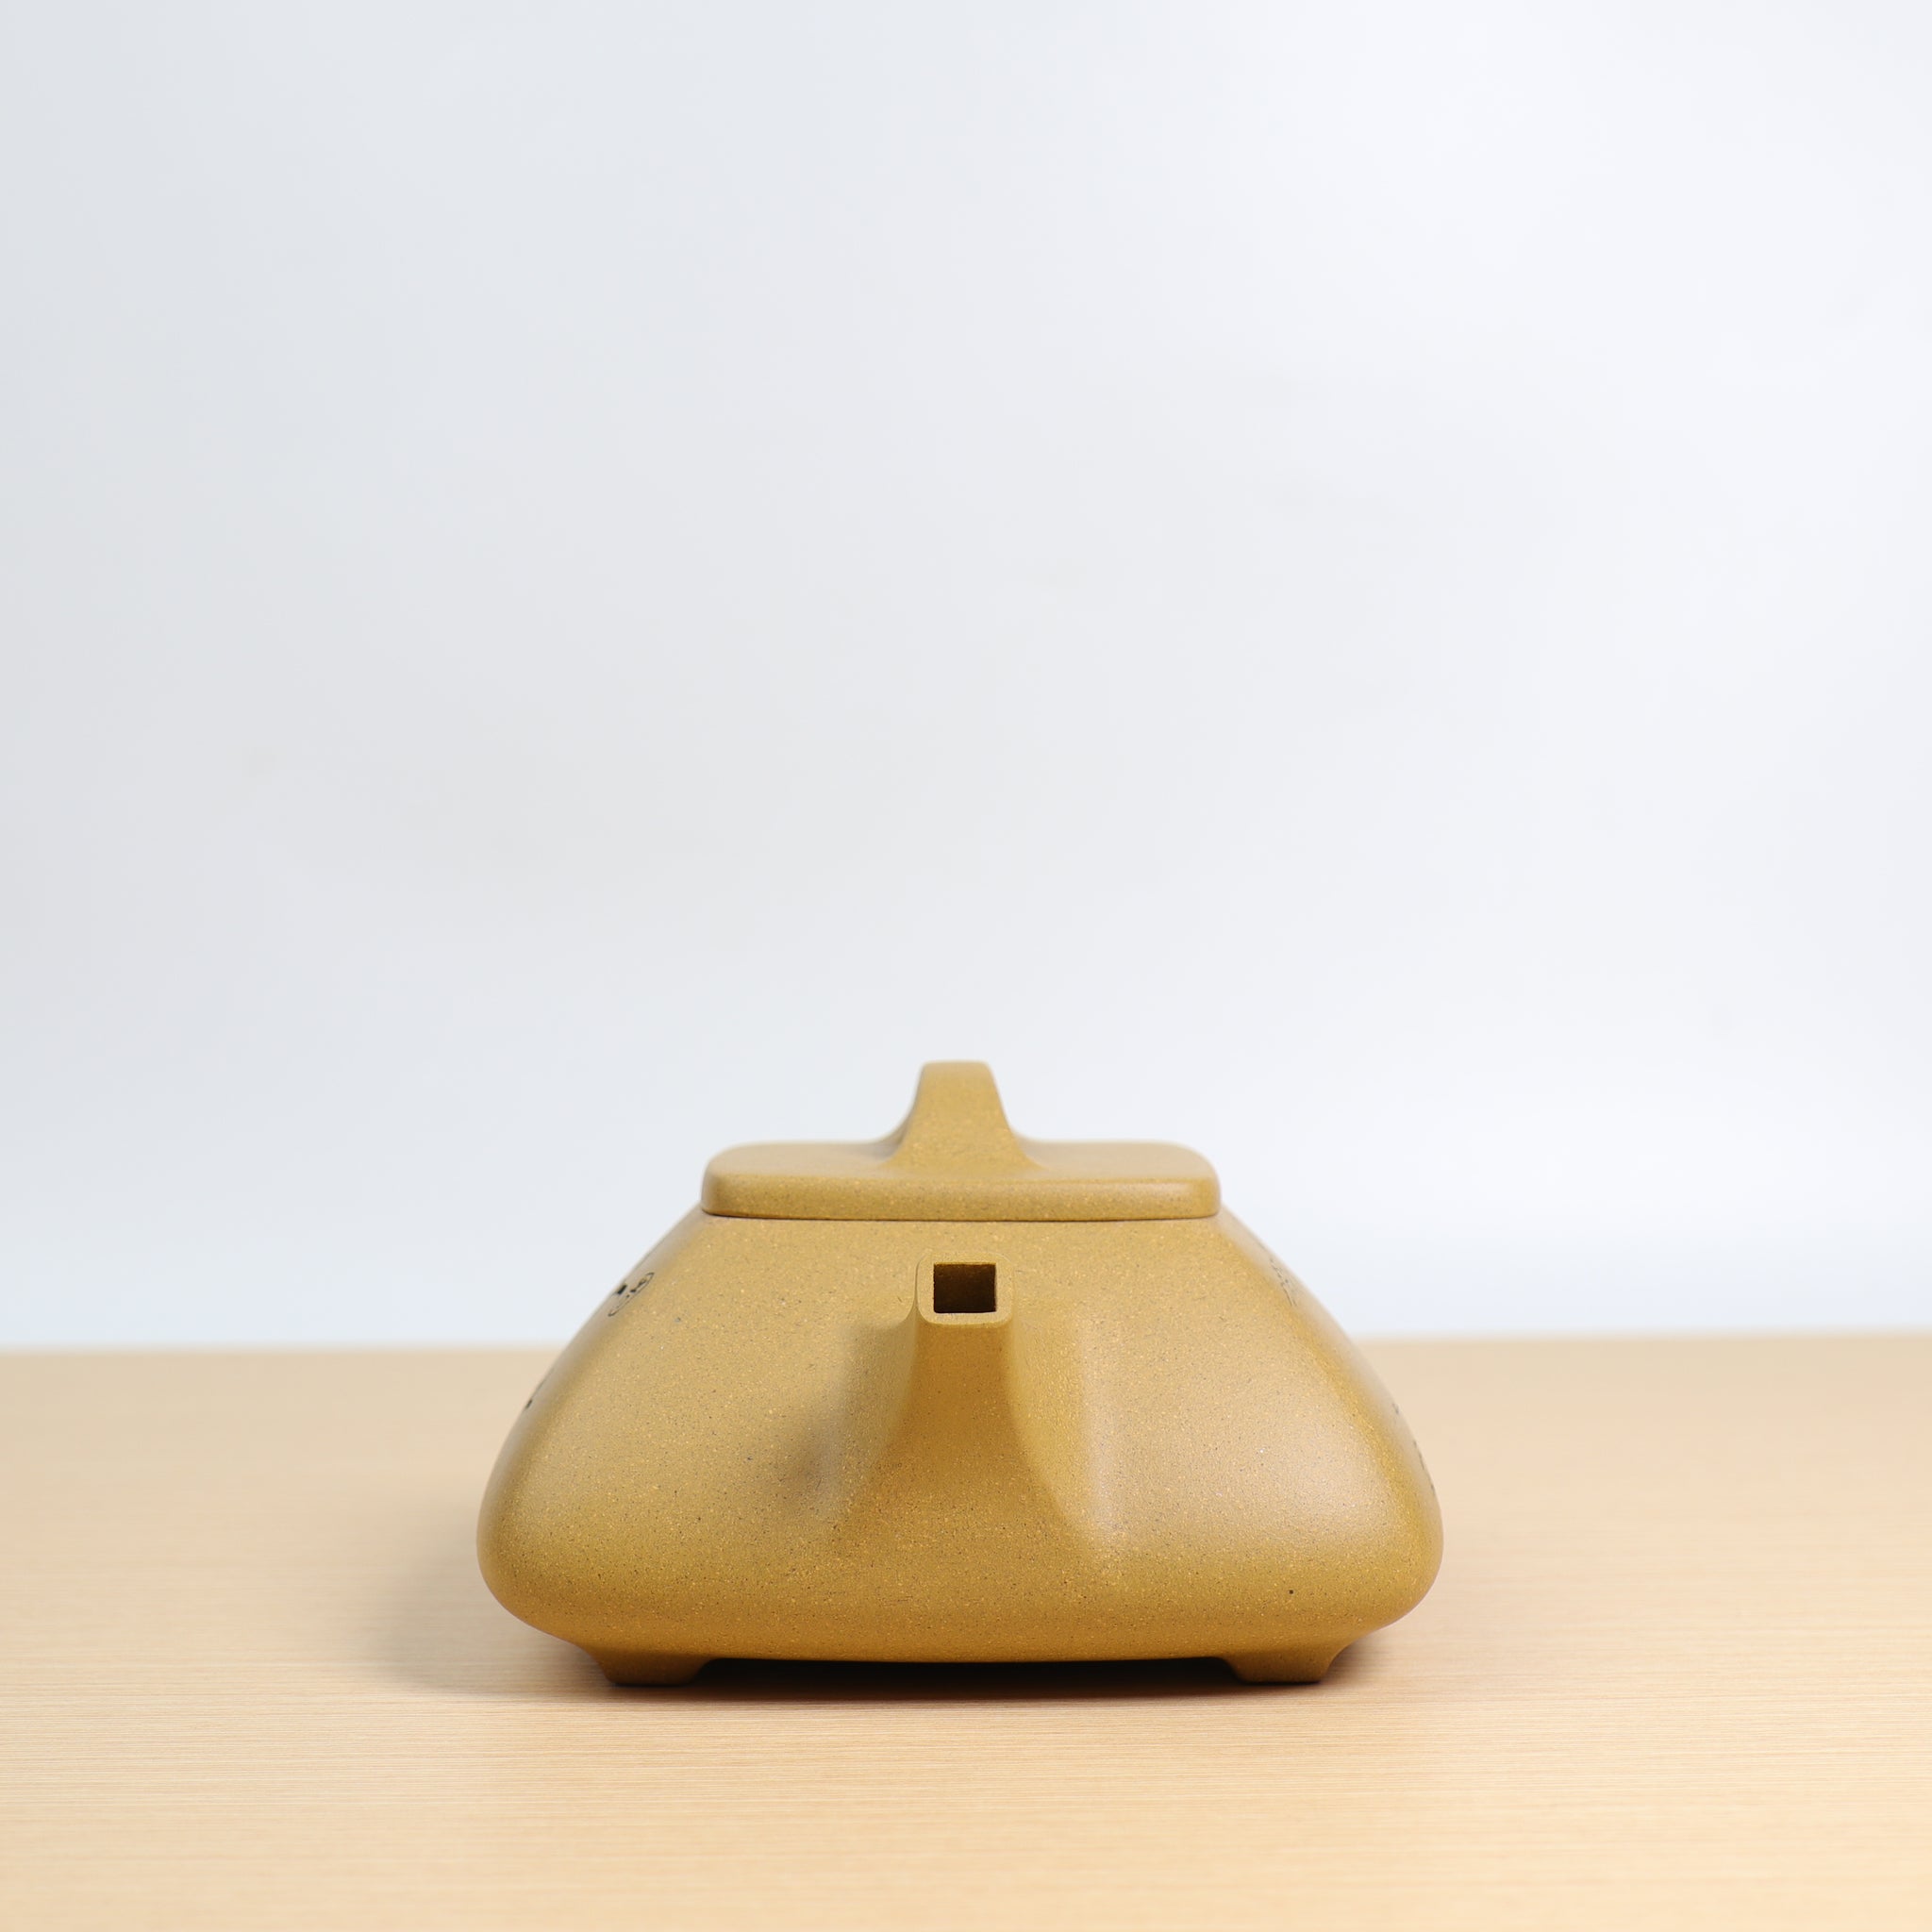 【四方石瓢】全手工黃金段泥刻畫紫砂茶壺